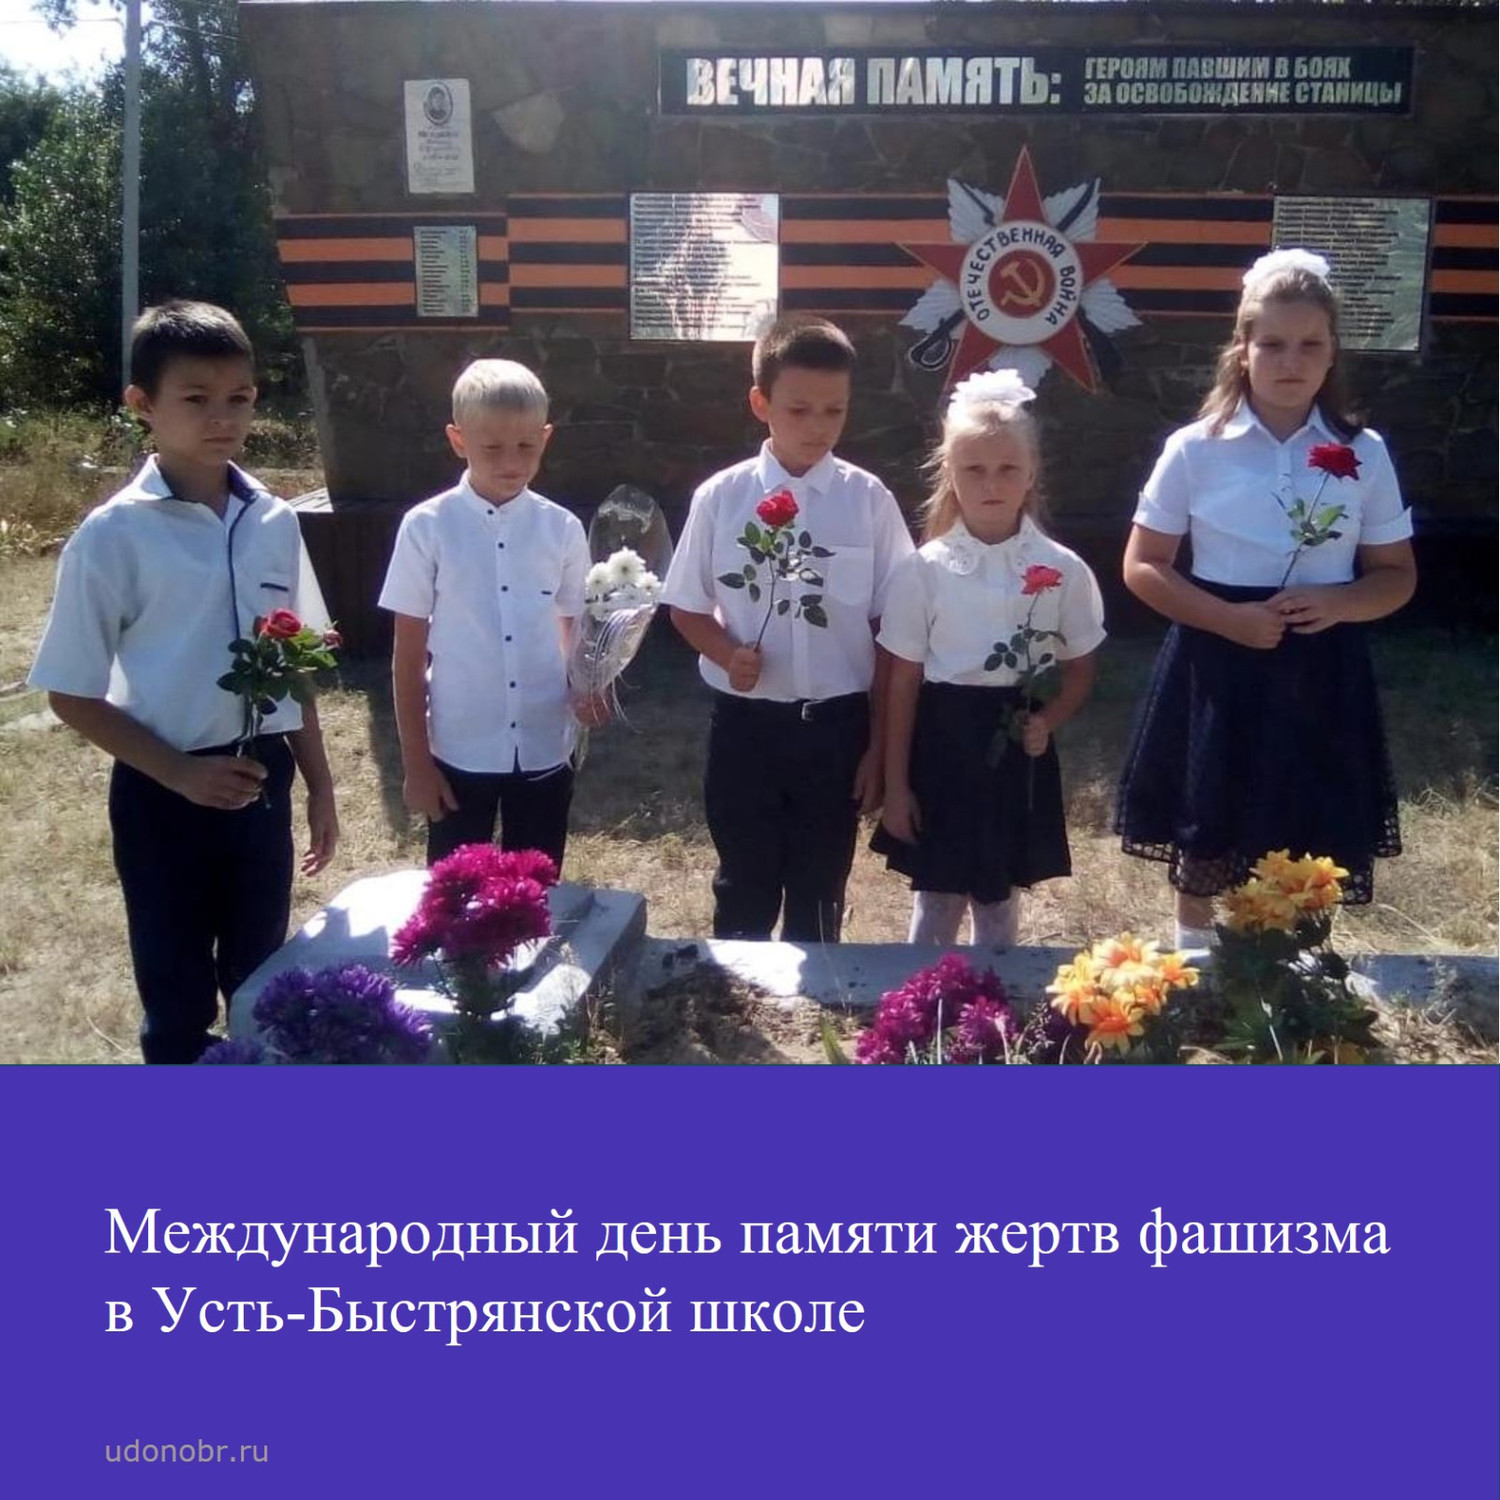 Международный день памяти жертв фашизма в Усть-Быстрянской школе